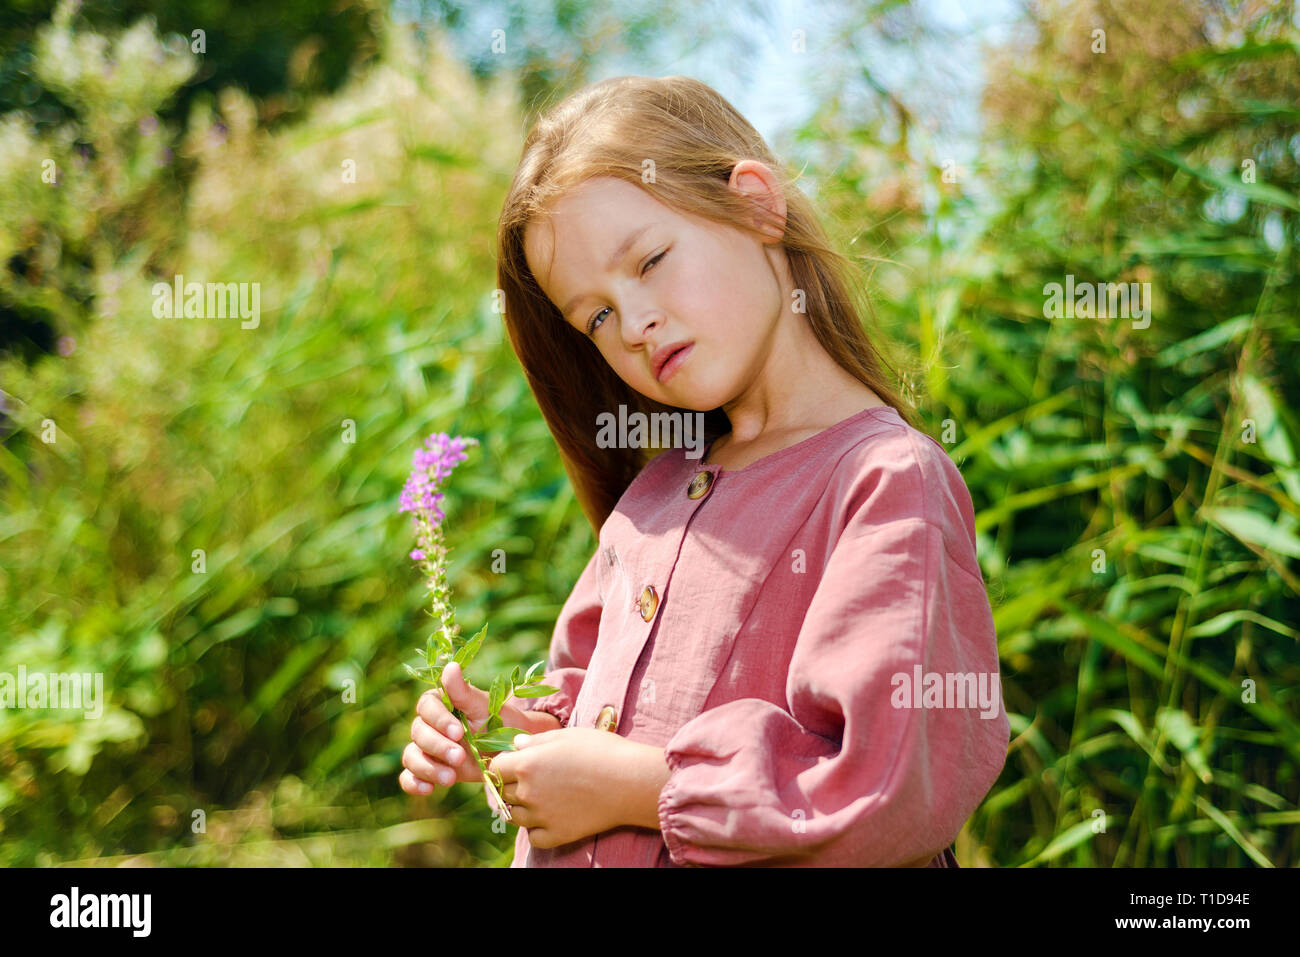 Belle petite fille en bourgogne dress holding fleur en journée ensoleillée. à l'arrière-plan de l'herbe verte Banque D'Images